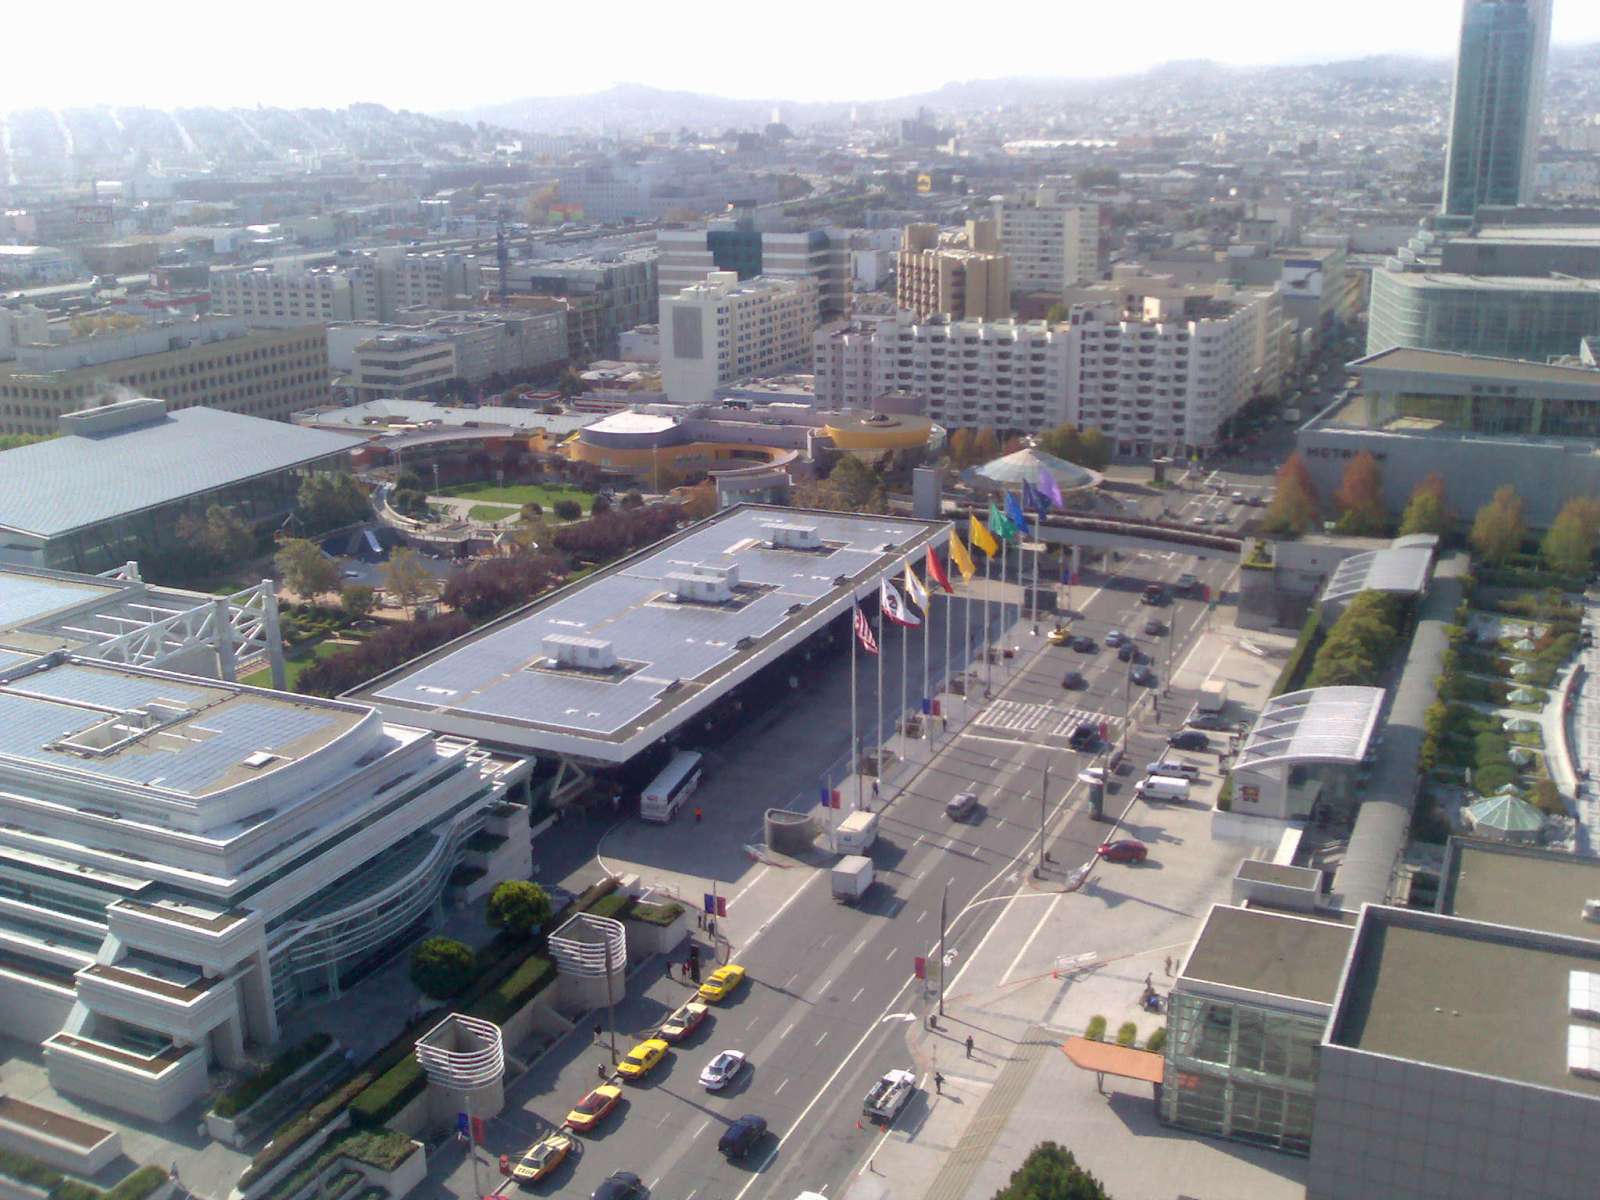 Moscone Center San Francisco